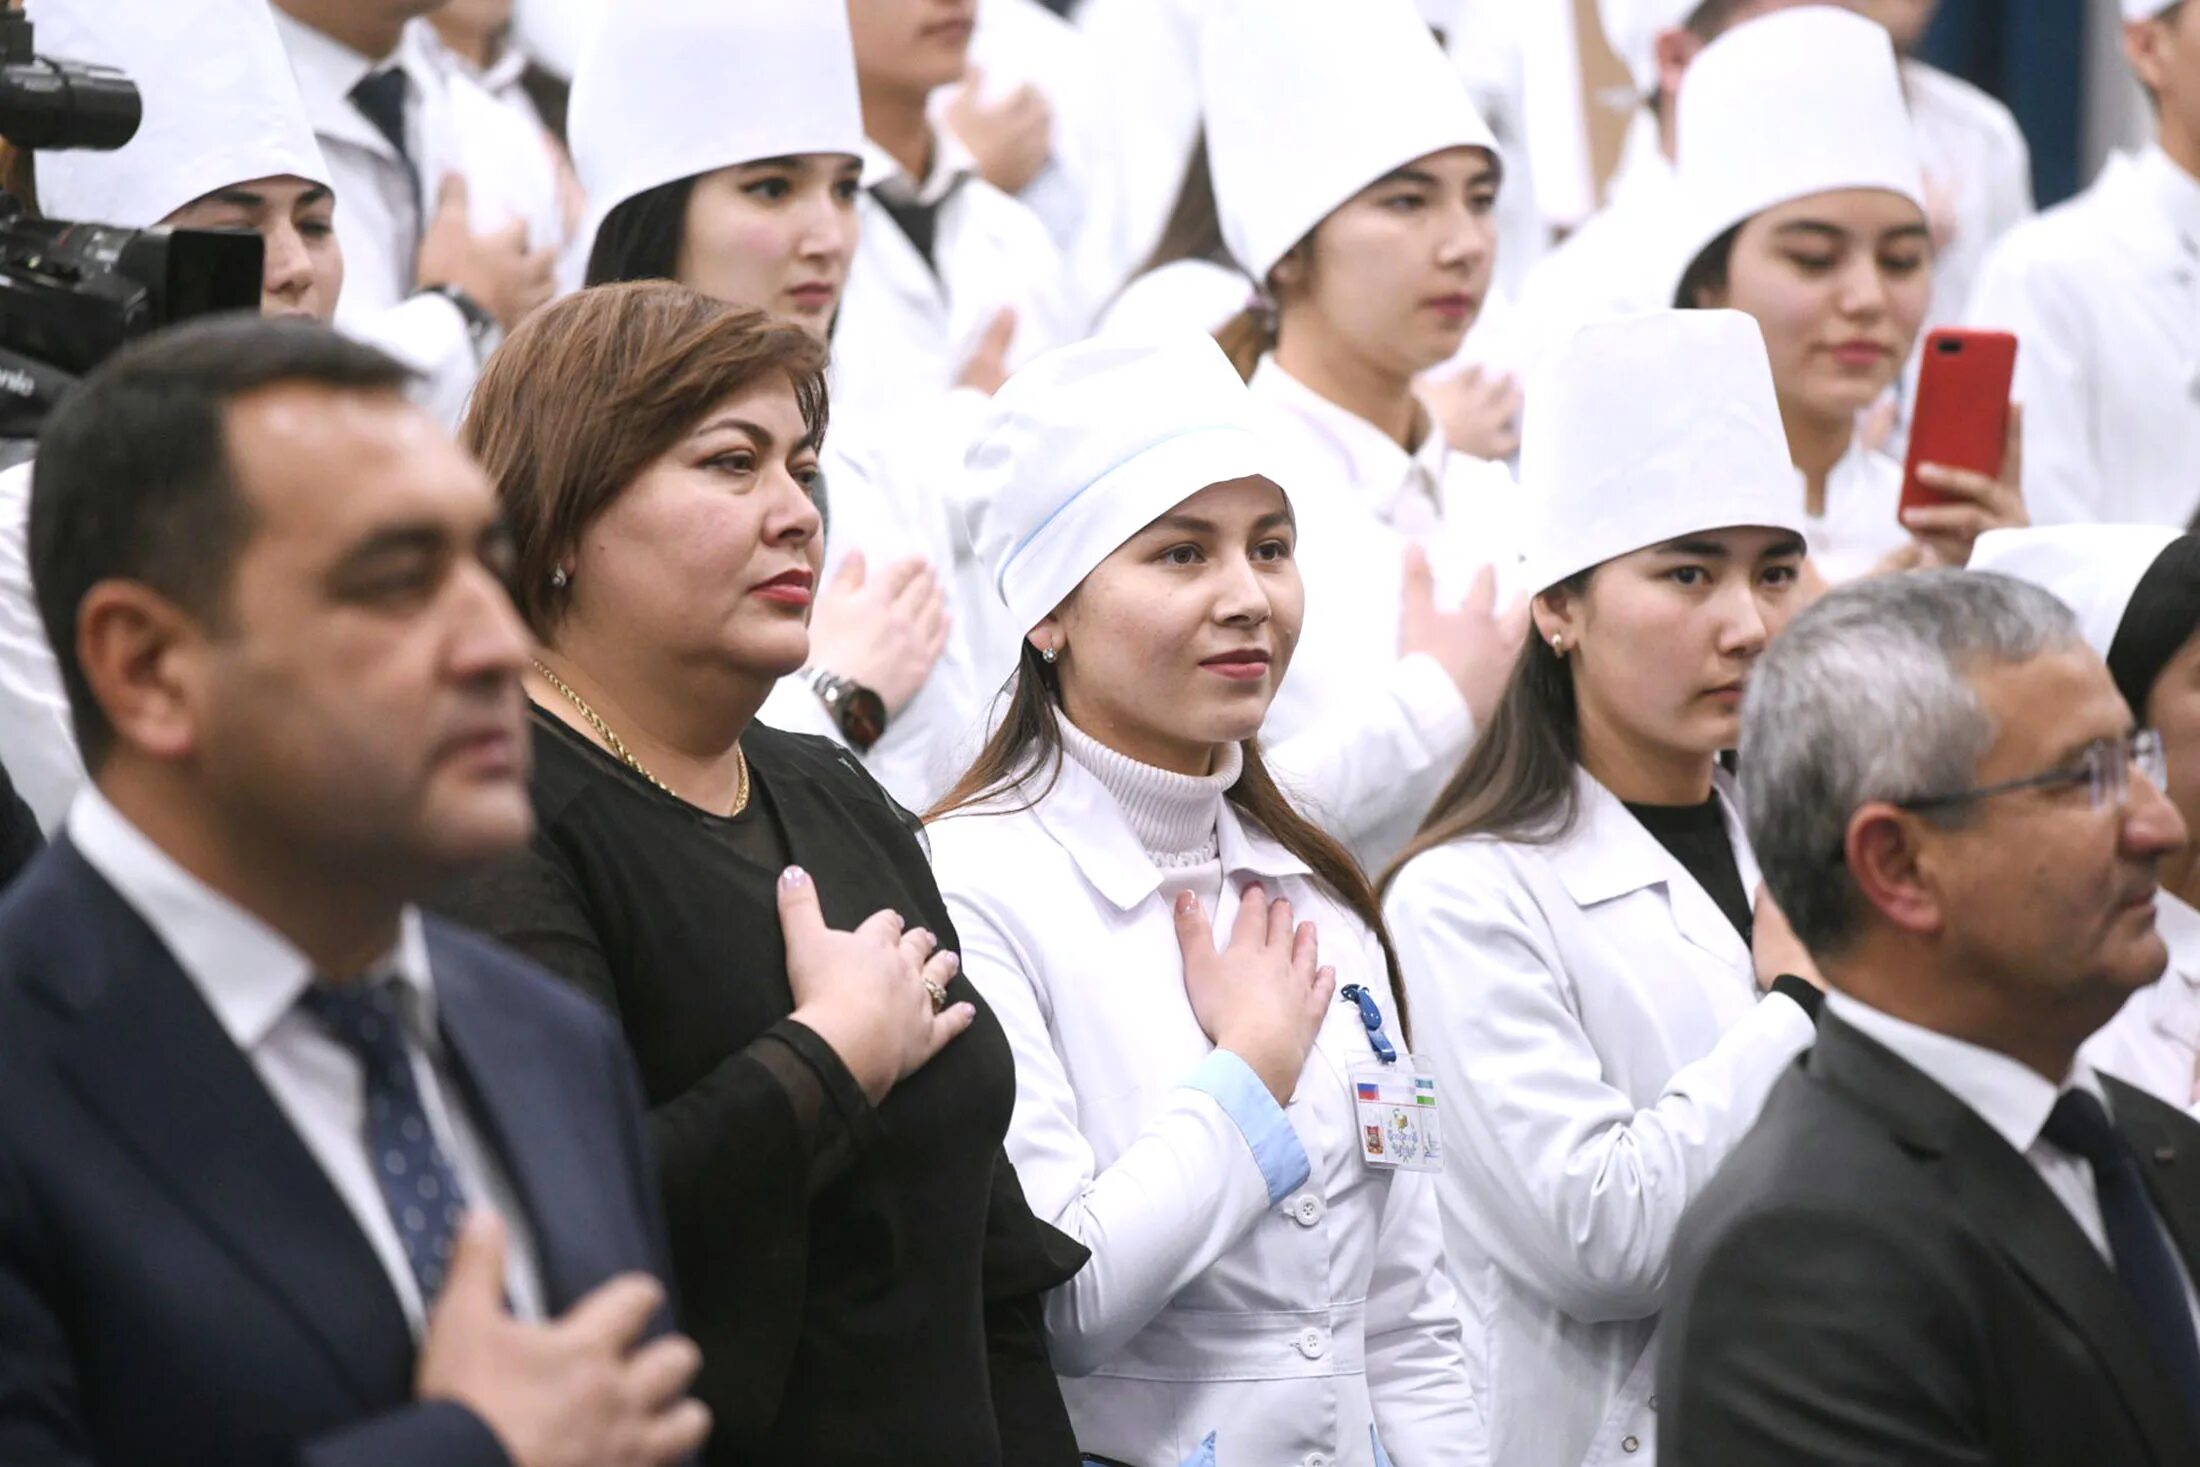 Клятва врача 7. Медики клятва Гиппократа. Врачи дают клятву. Студенты Узбекистана. Студенты-медики клятву Гиппократа.